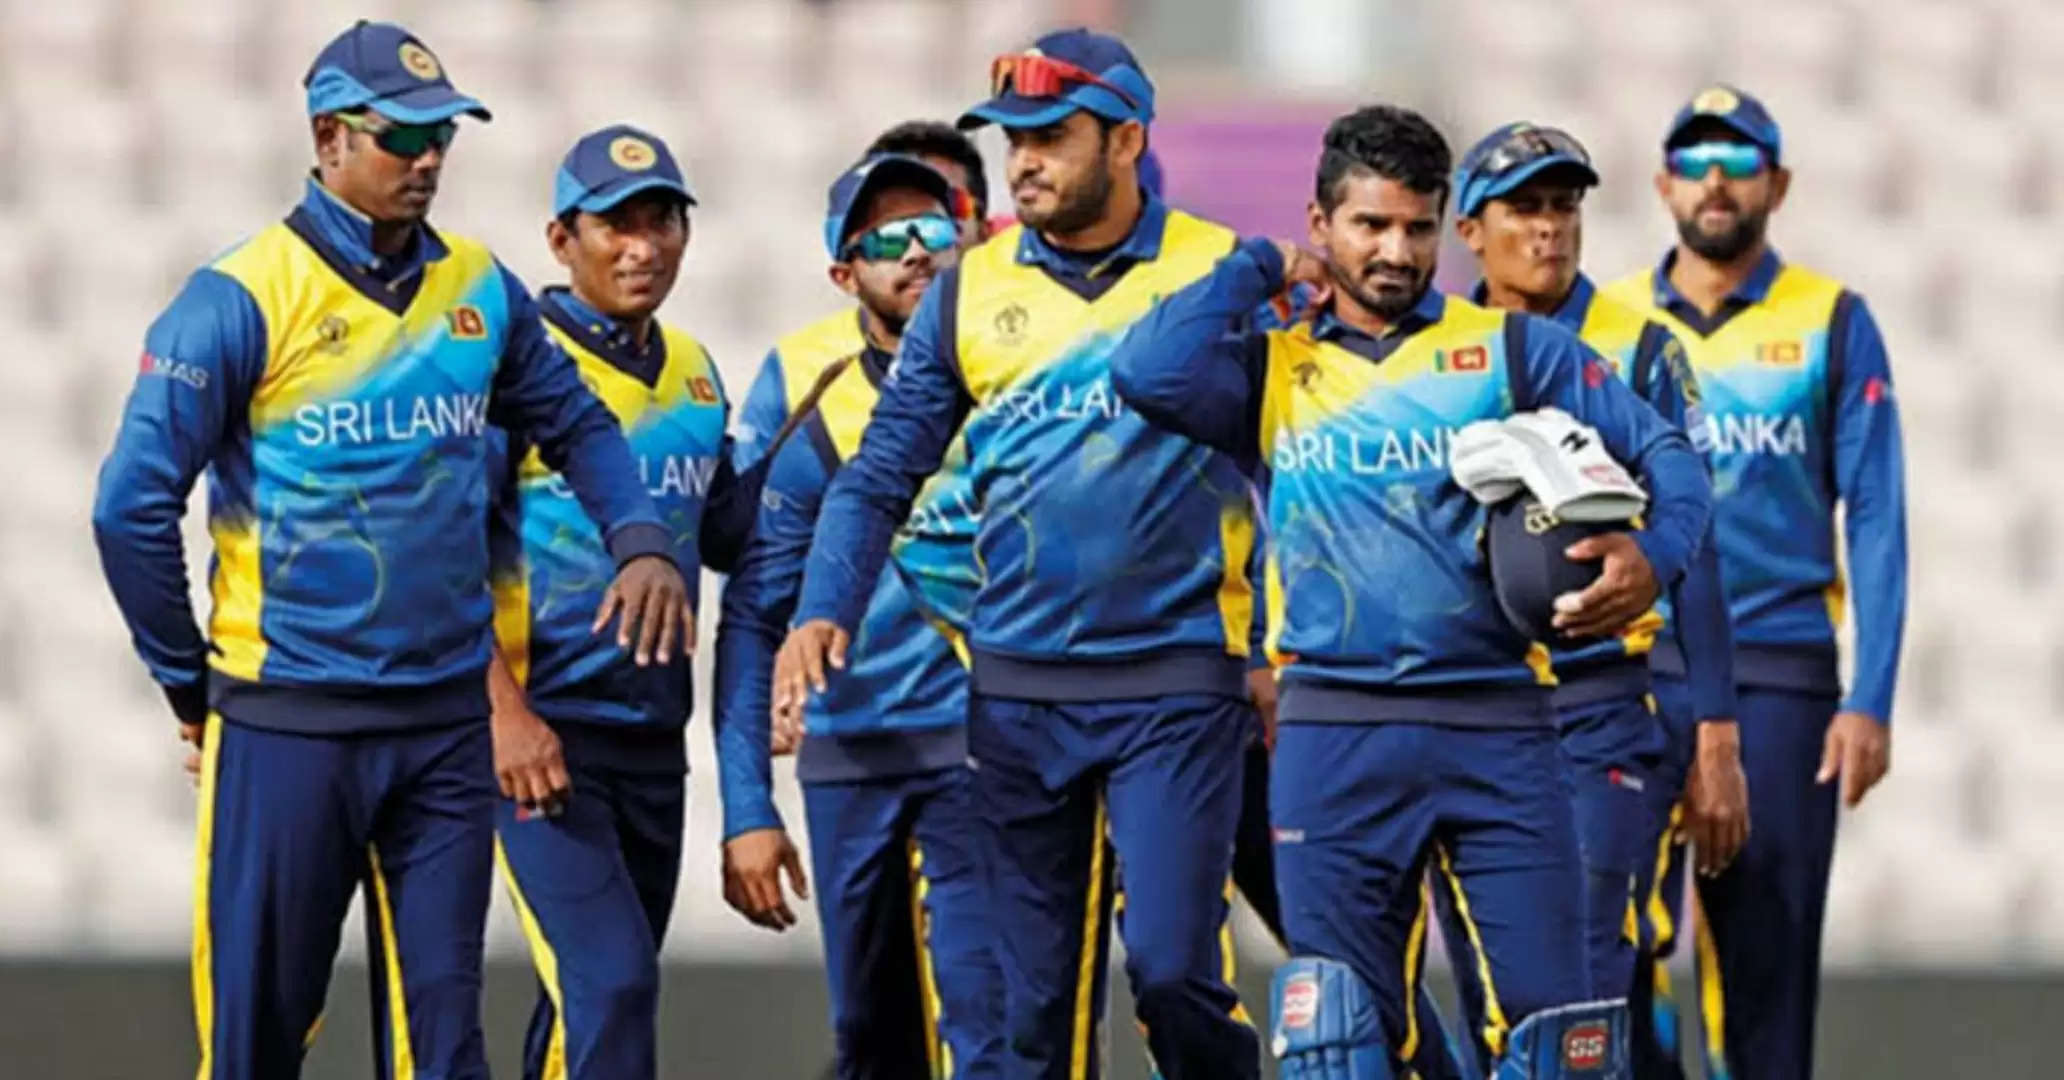 Srilanka cricket team